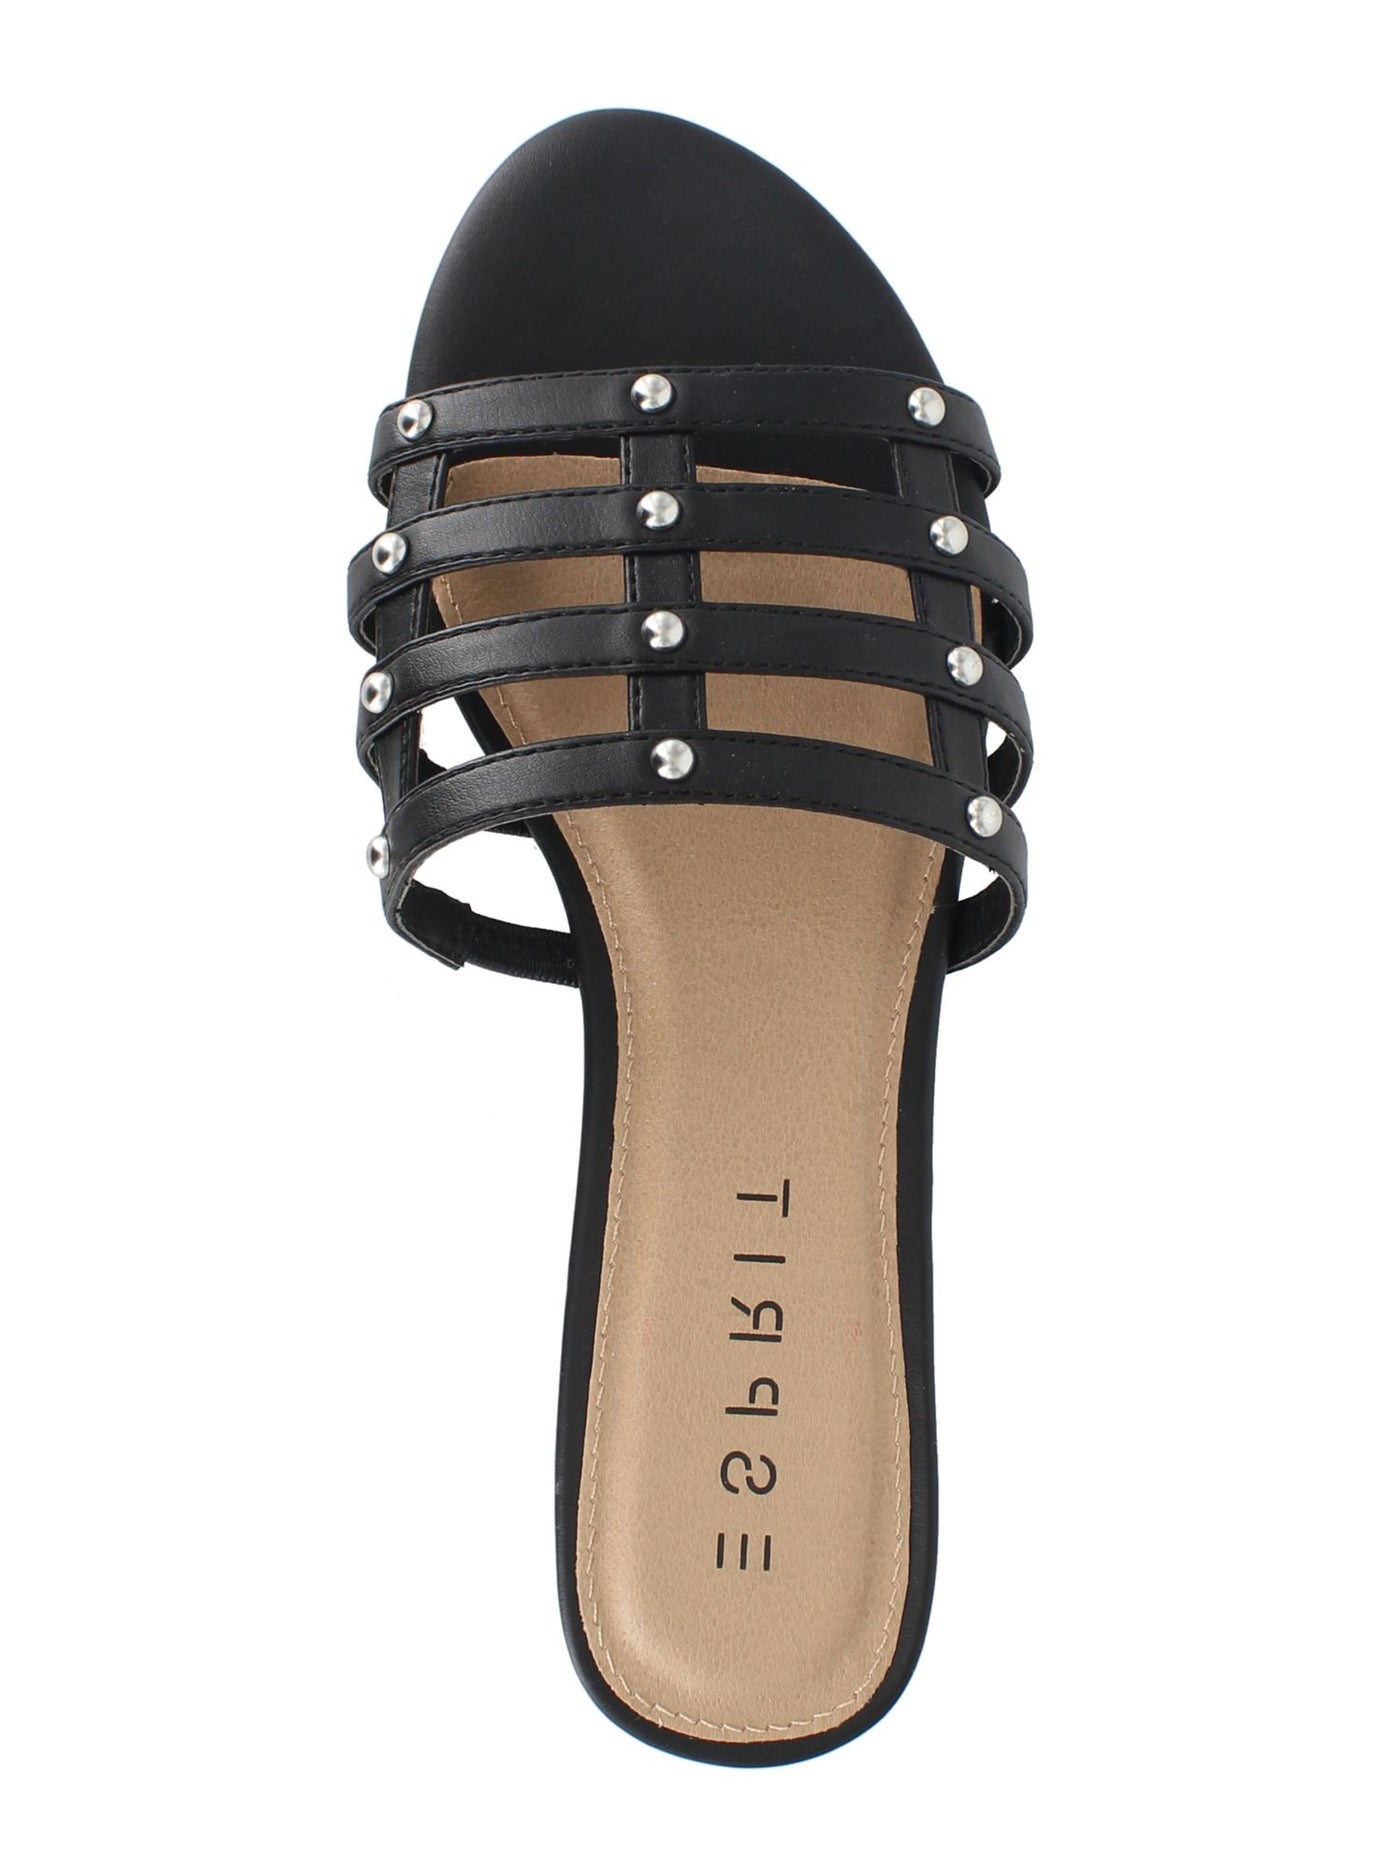 ESPRIT Womens Black Studded Comfort Kylee Round Toe Slip On Slide Sandals Shoes 6.5 M